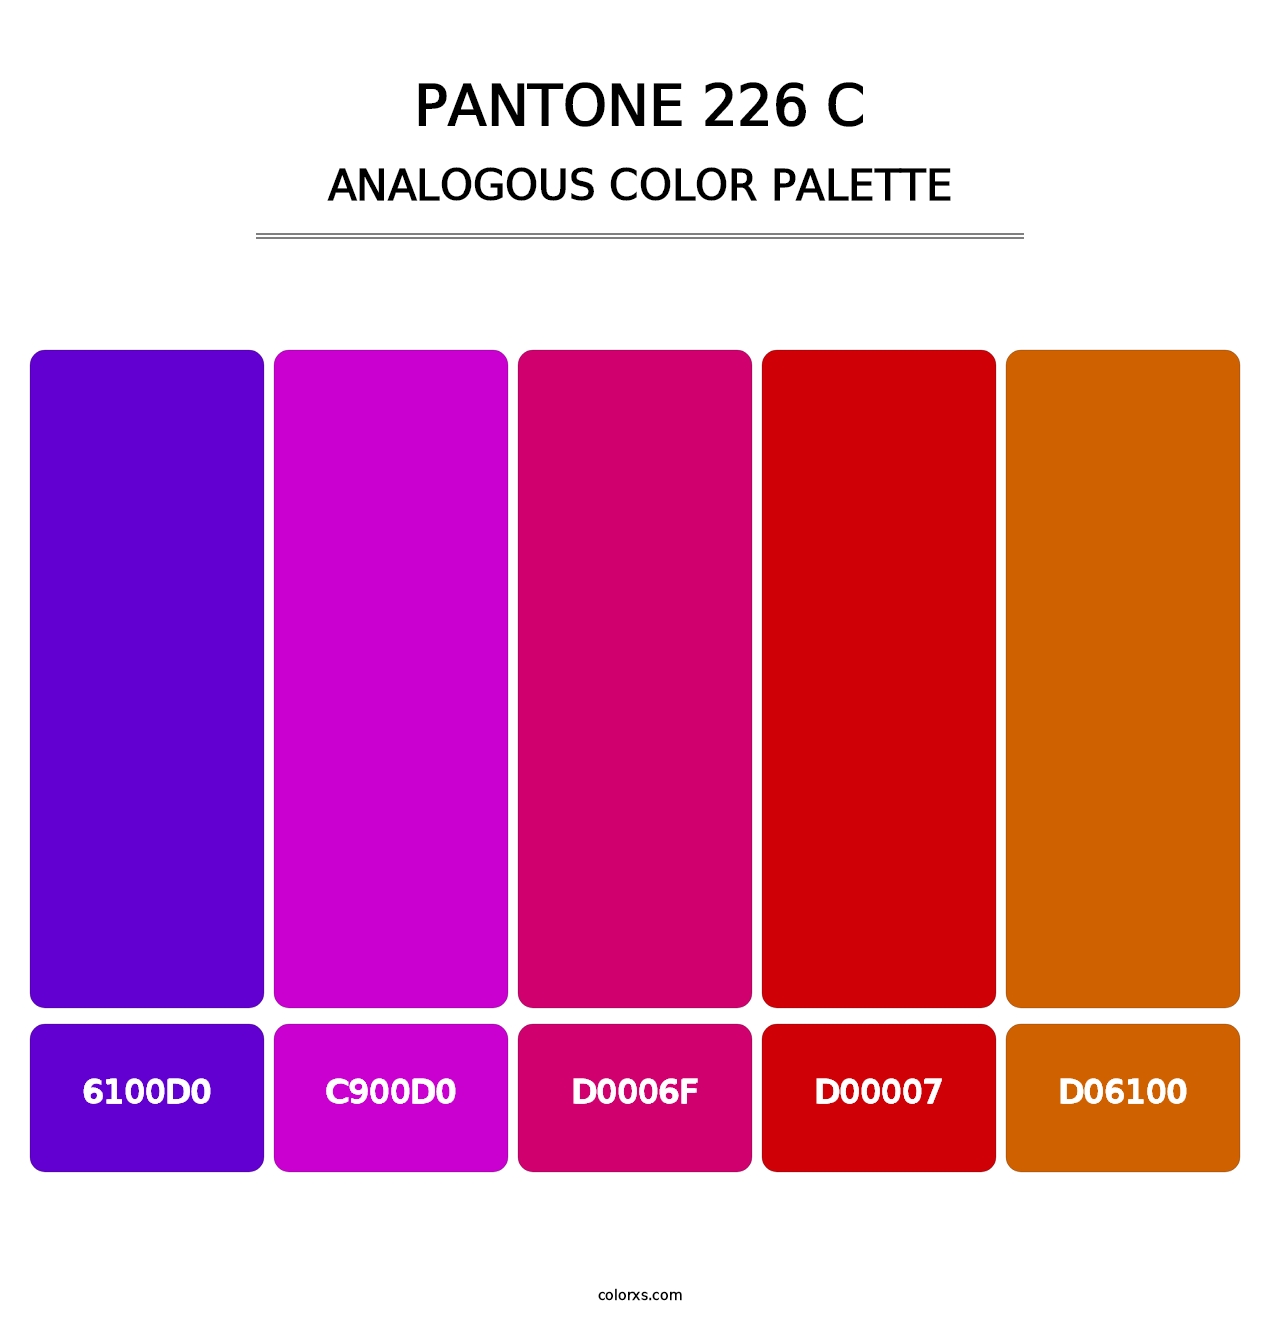 PANTONE 226 C - Analogous Color Palette